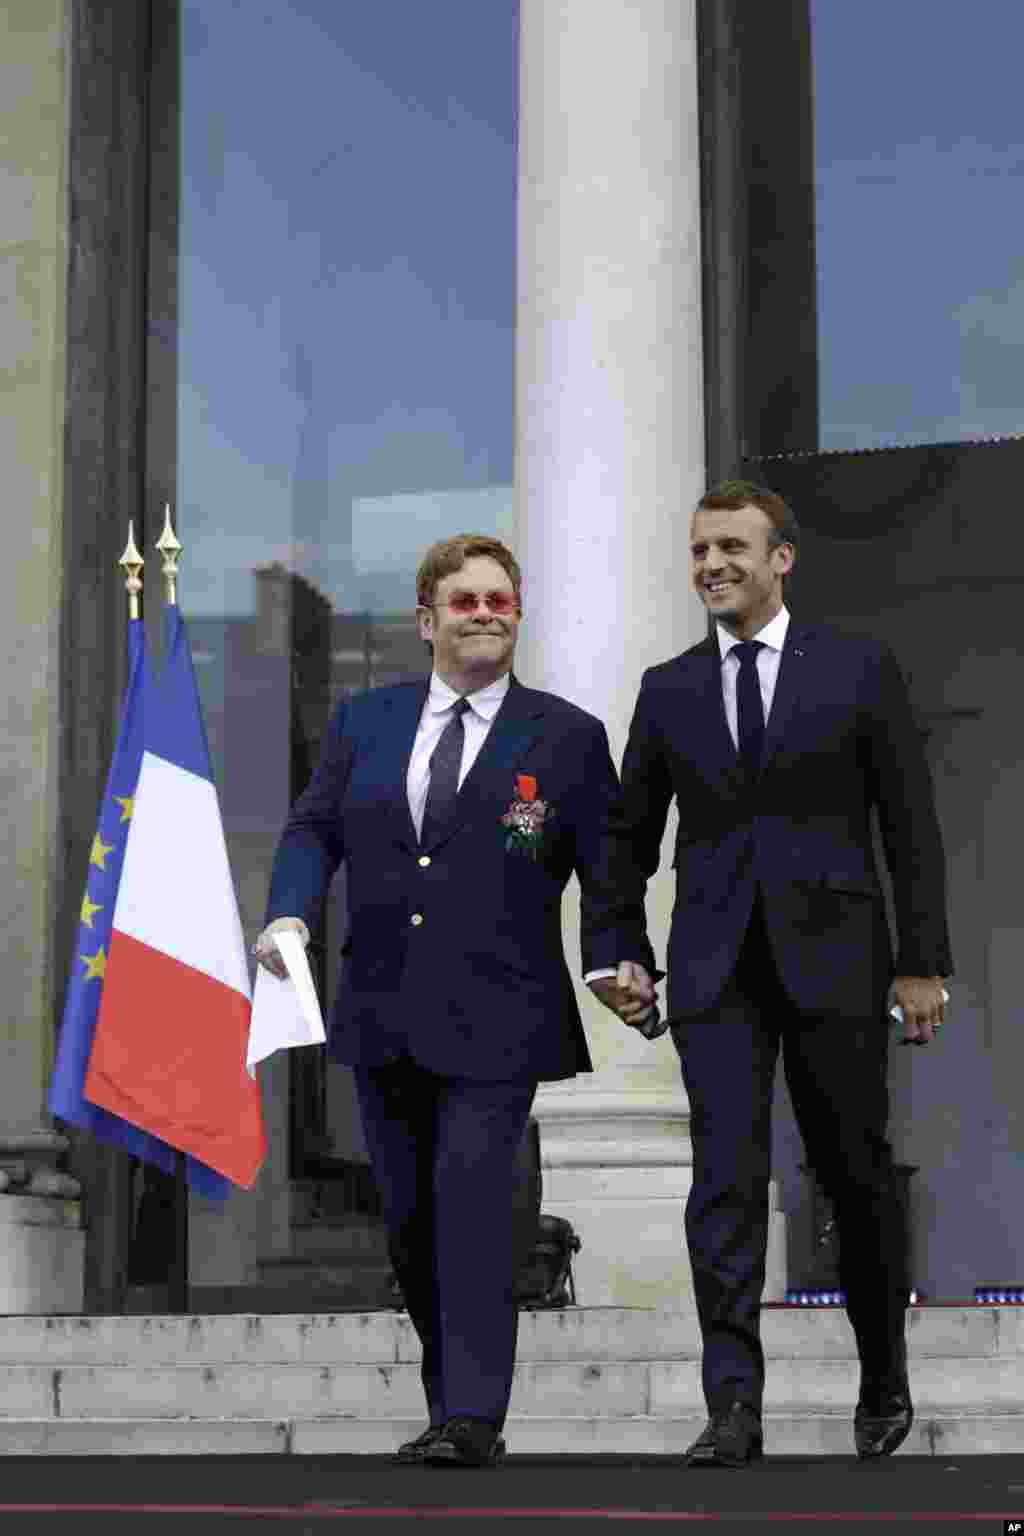 التون جان و امانوئل ماکرون در مقابل کاخ الیزه پس از اهدای نشان لژیون دونور فرانسه به خواننده سرشناس بریتانیایی.